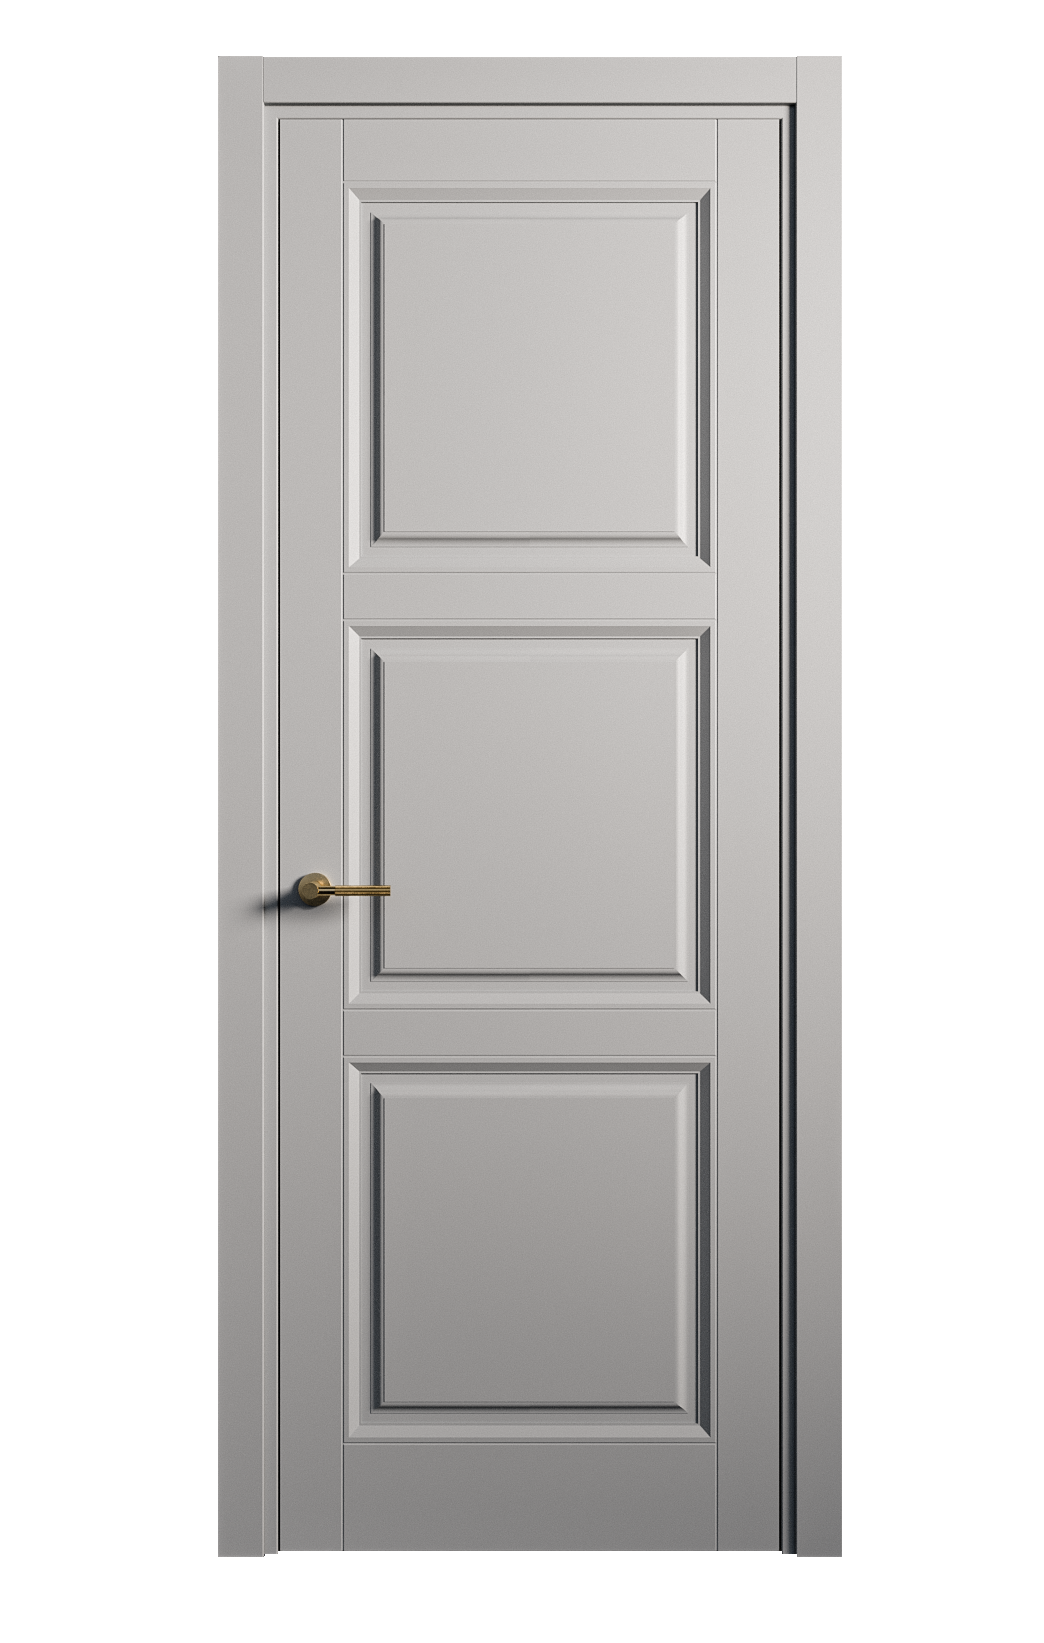 Межкомнатная дверь Venezia-3 глухая эмаль ral 7040 25724